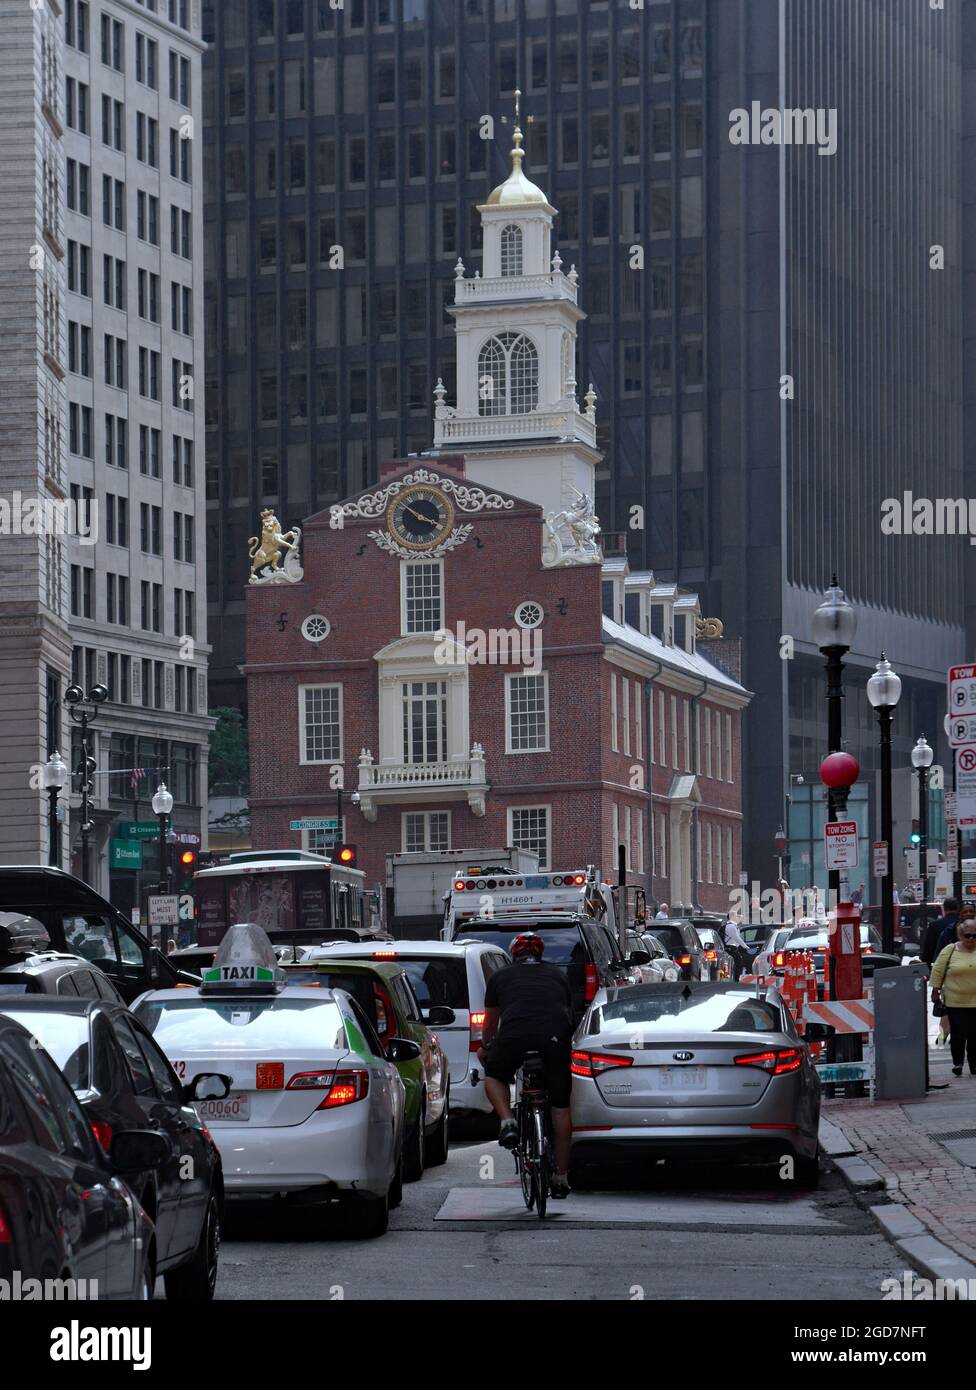 Boston, Massachusetts - 23 juin 2015 : circulation intense pendant les heures de pointe dans le centre-ville de Boston, en face de l'historique Old State House. Banque D'Images